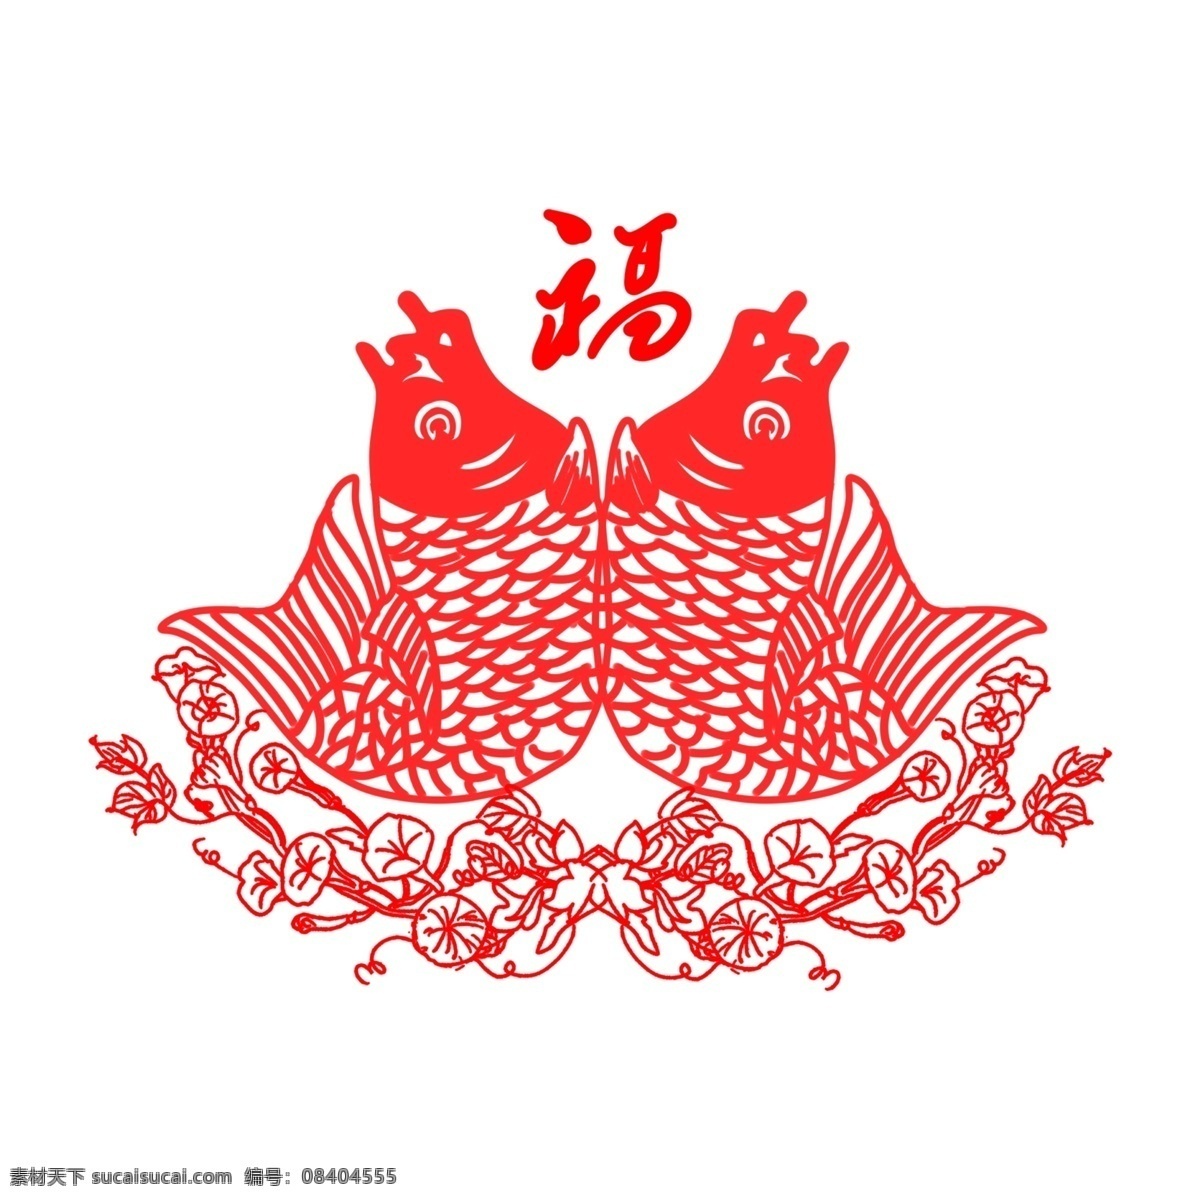 窗花 剪 纸鱼 福字 新年 传统节日 手绘 插画 商用 福 红色 中国风 古风